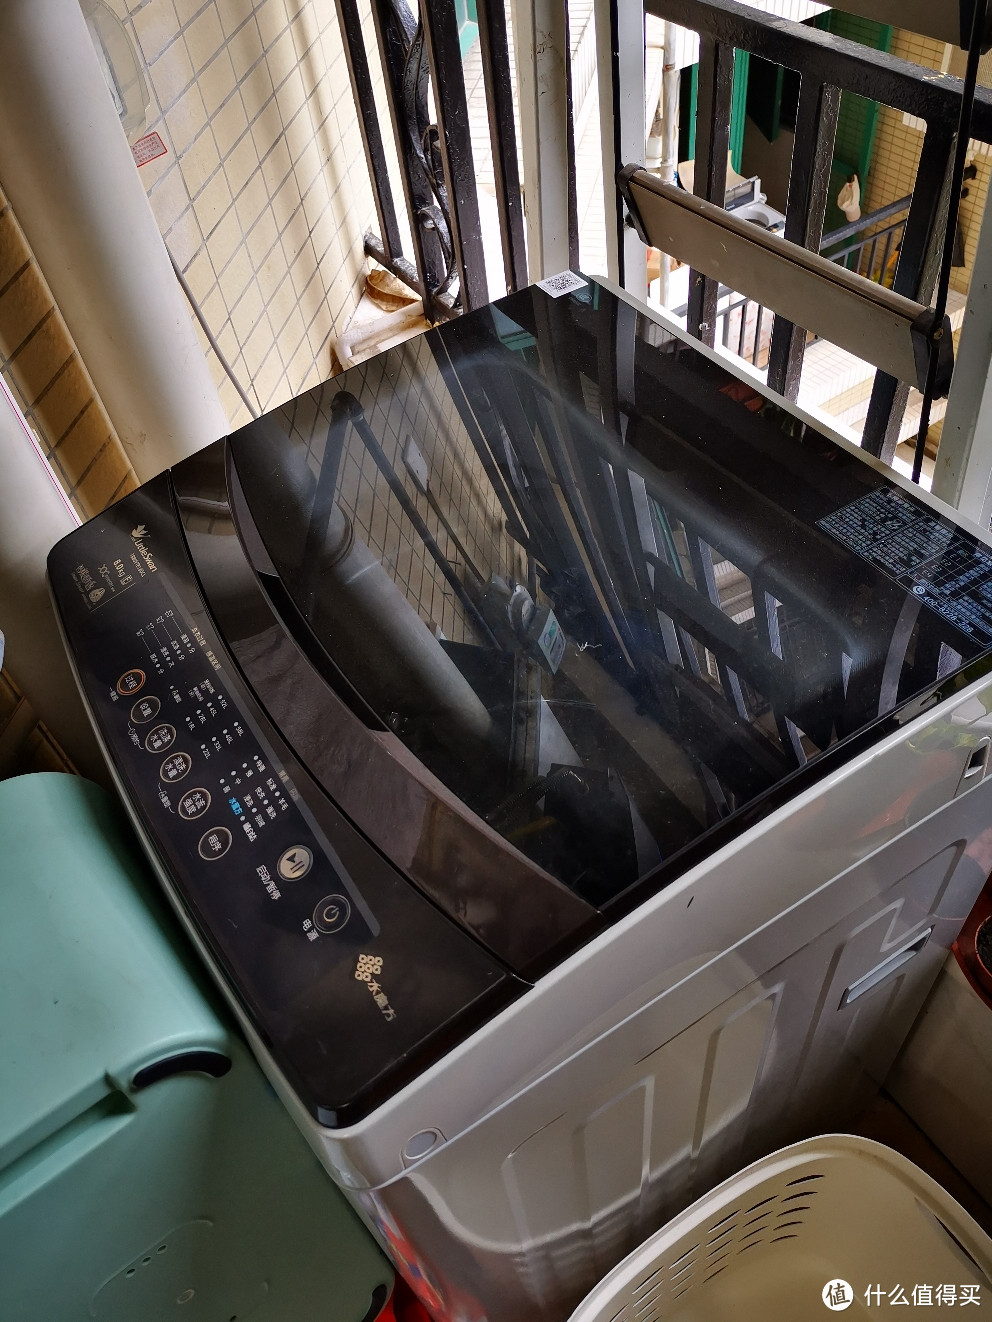 洗衣机圆筒的好处就是清洗速度快，而且干净程度比较高，但是会卷绕衣服，但是扔到烘干机里面基本上就没有这个问题，而且现在新的，缠绕也没有那么厉害。